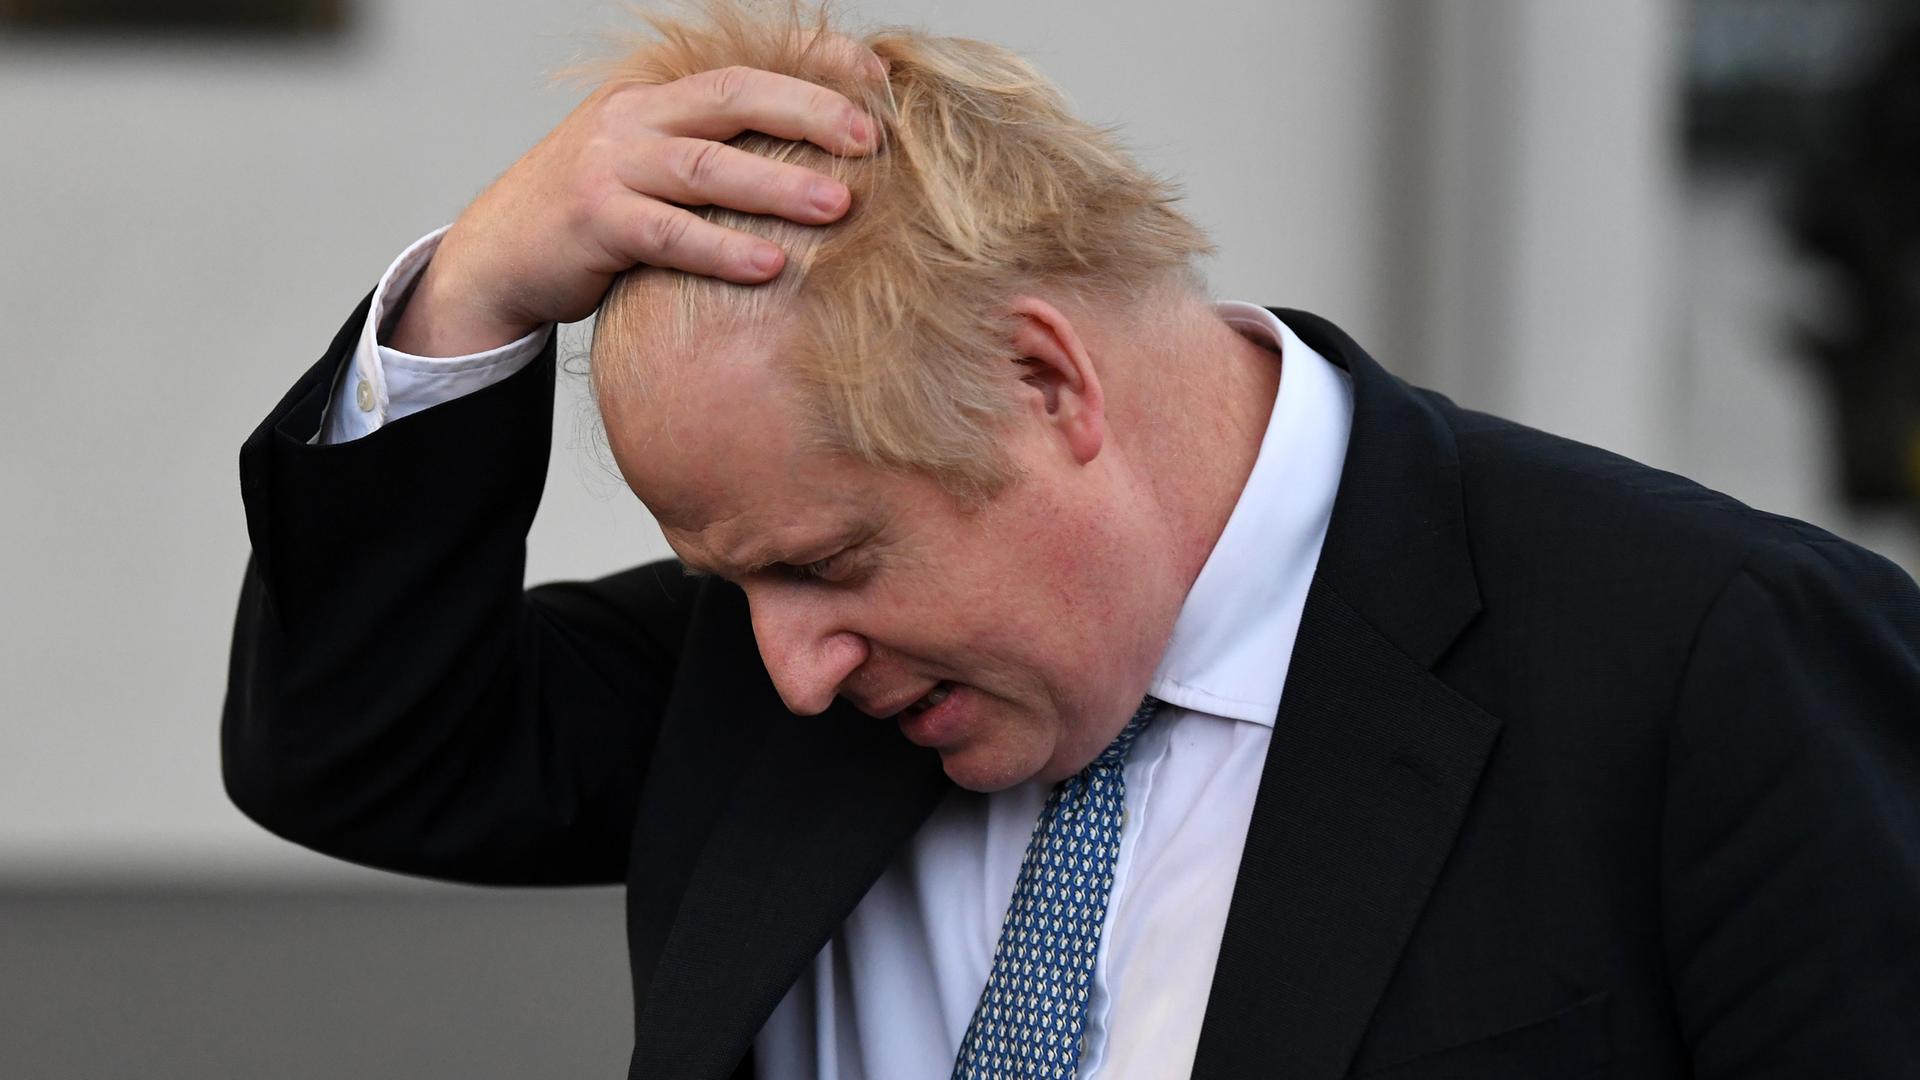 Großbritanniens Premierminister Boris Johnson streicht sich erschöpft durch sein Haar.